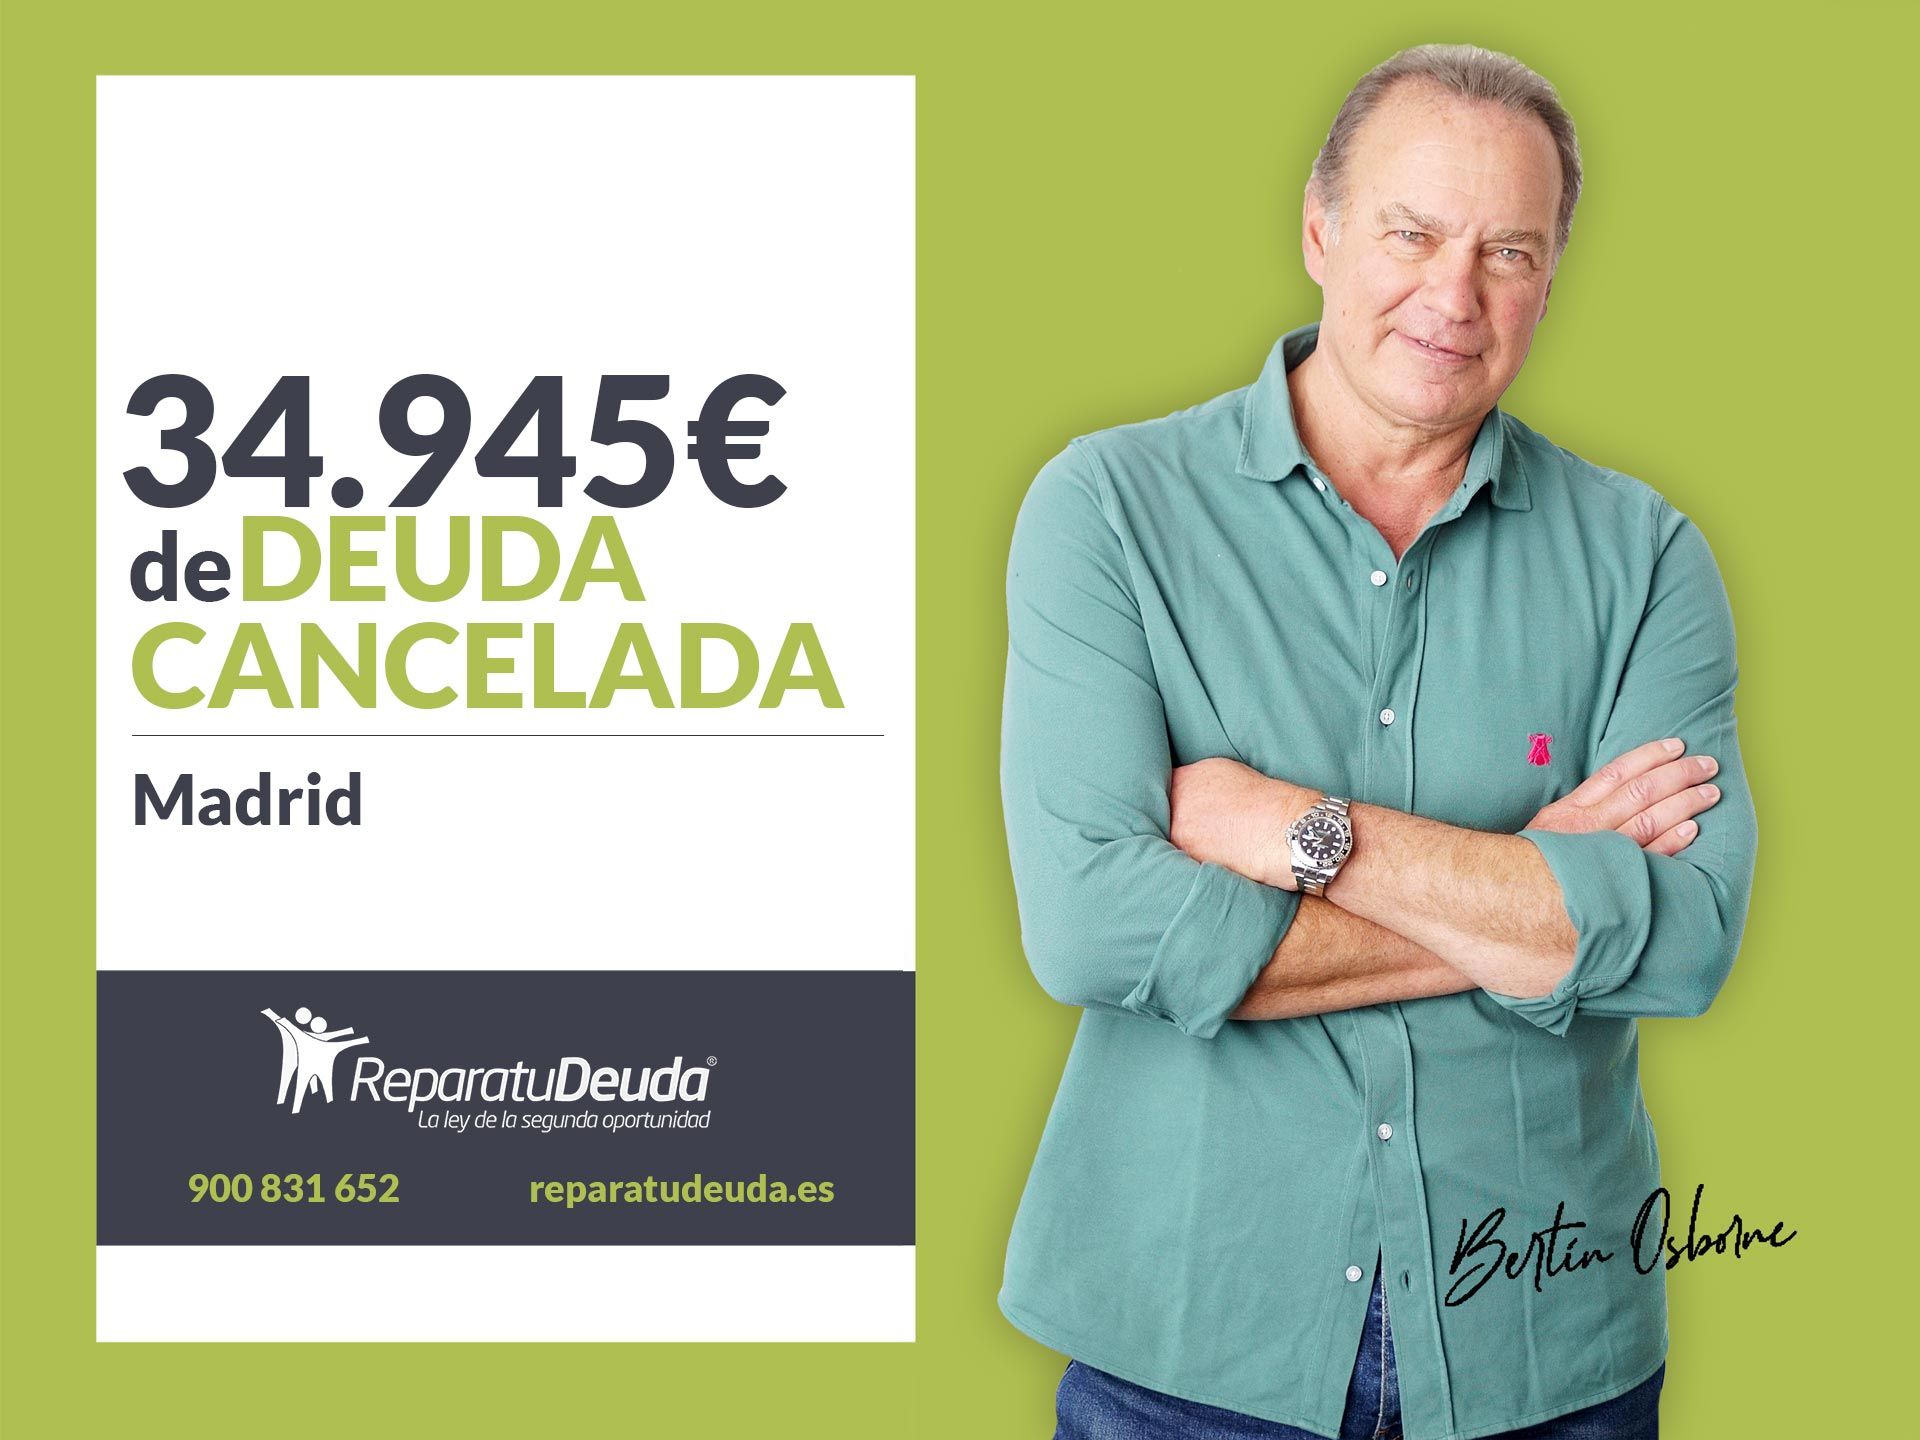 Repara tu Deuda Abogados cancela 34.945? en Madrid con la Ley de Segunda Oportunidad